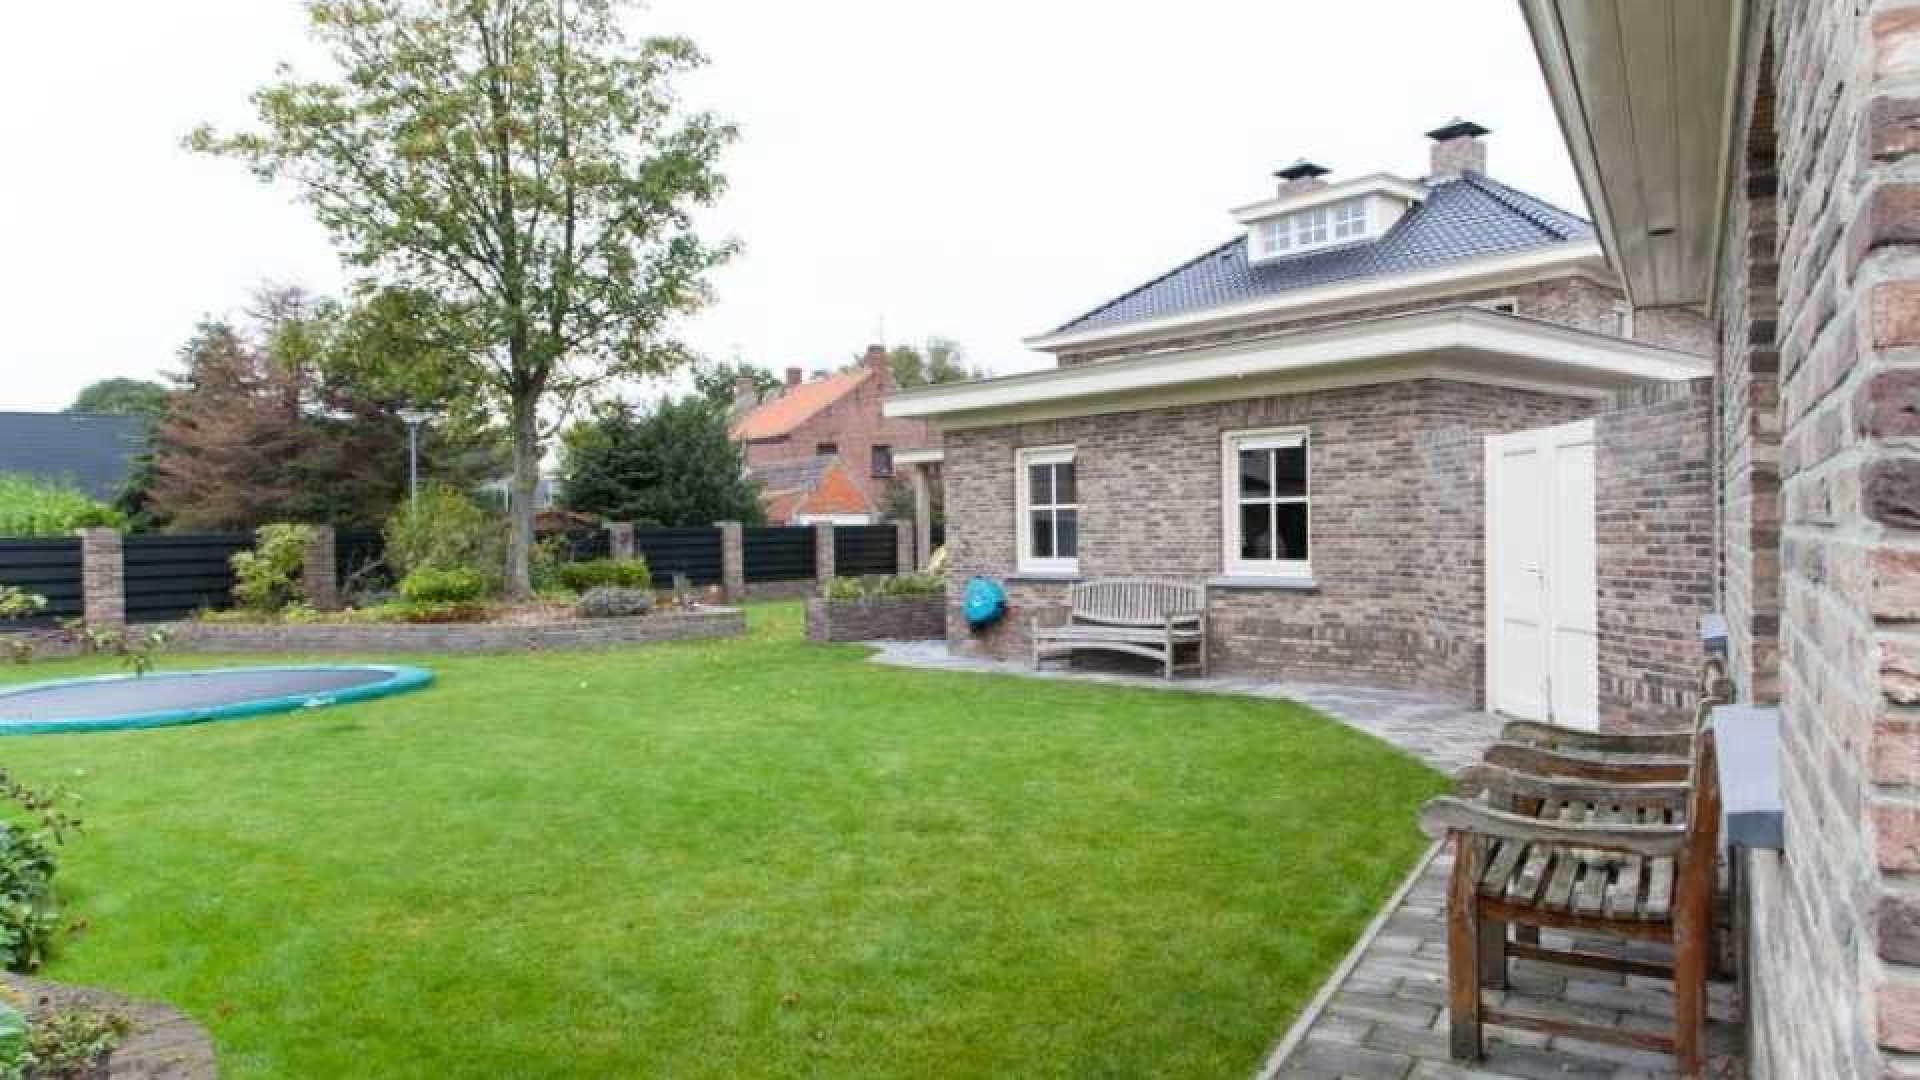 Wereldkampioen kickboksen Rico Verhoeven koopt luxe villa. Zie foto's